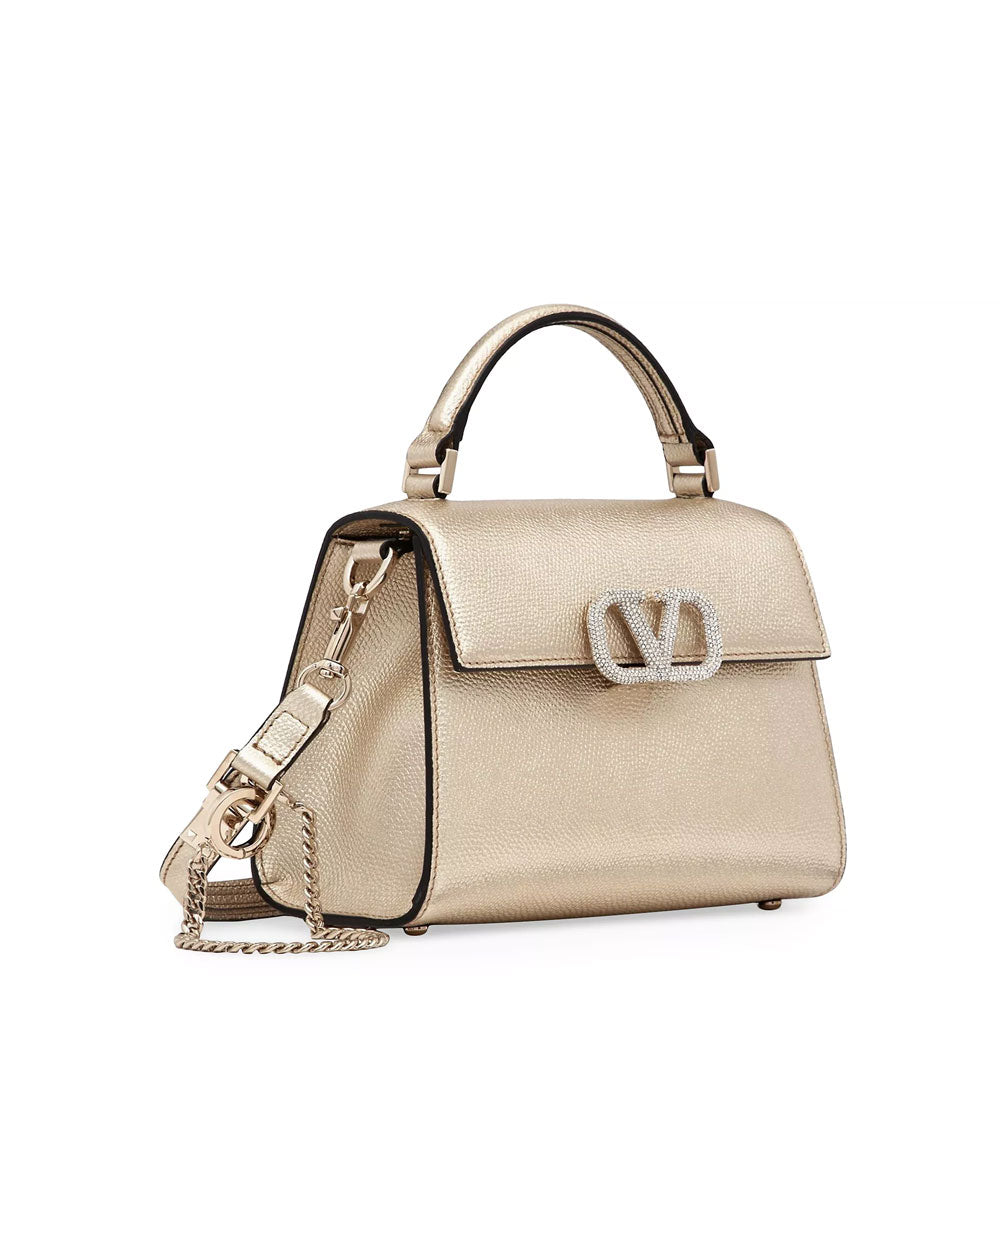 VSling Mini Top Handle Bag in Platino